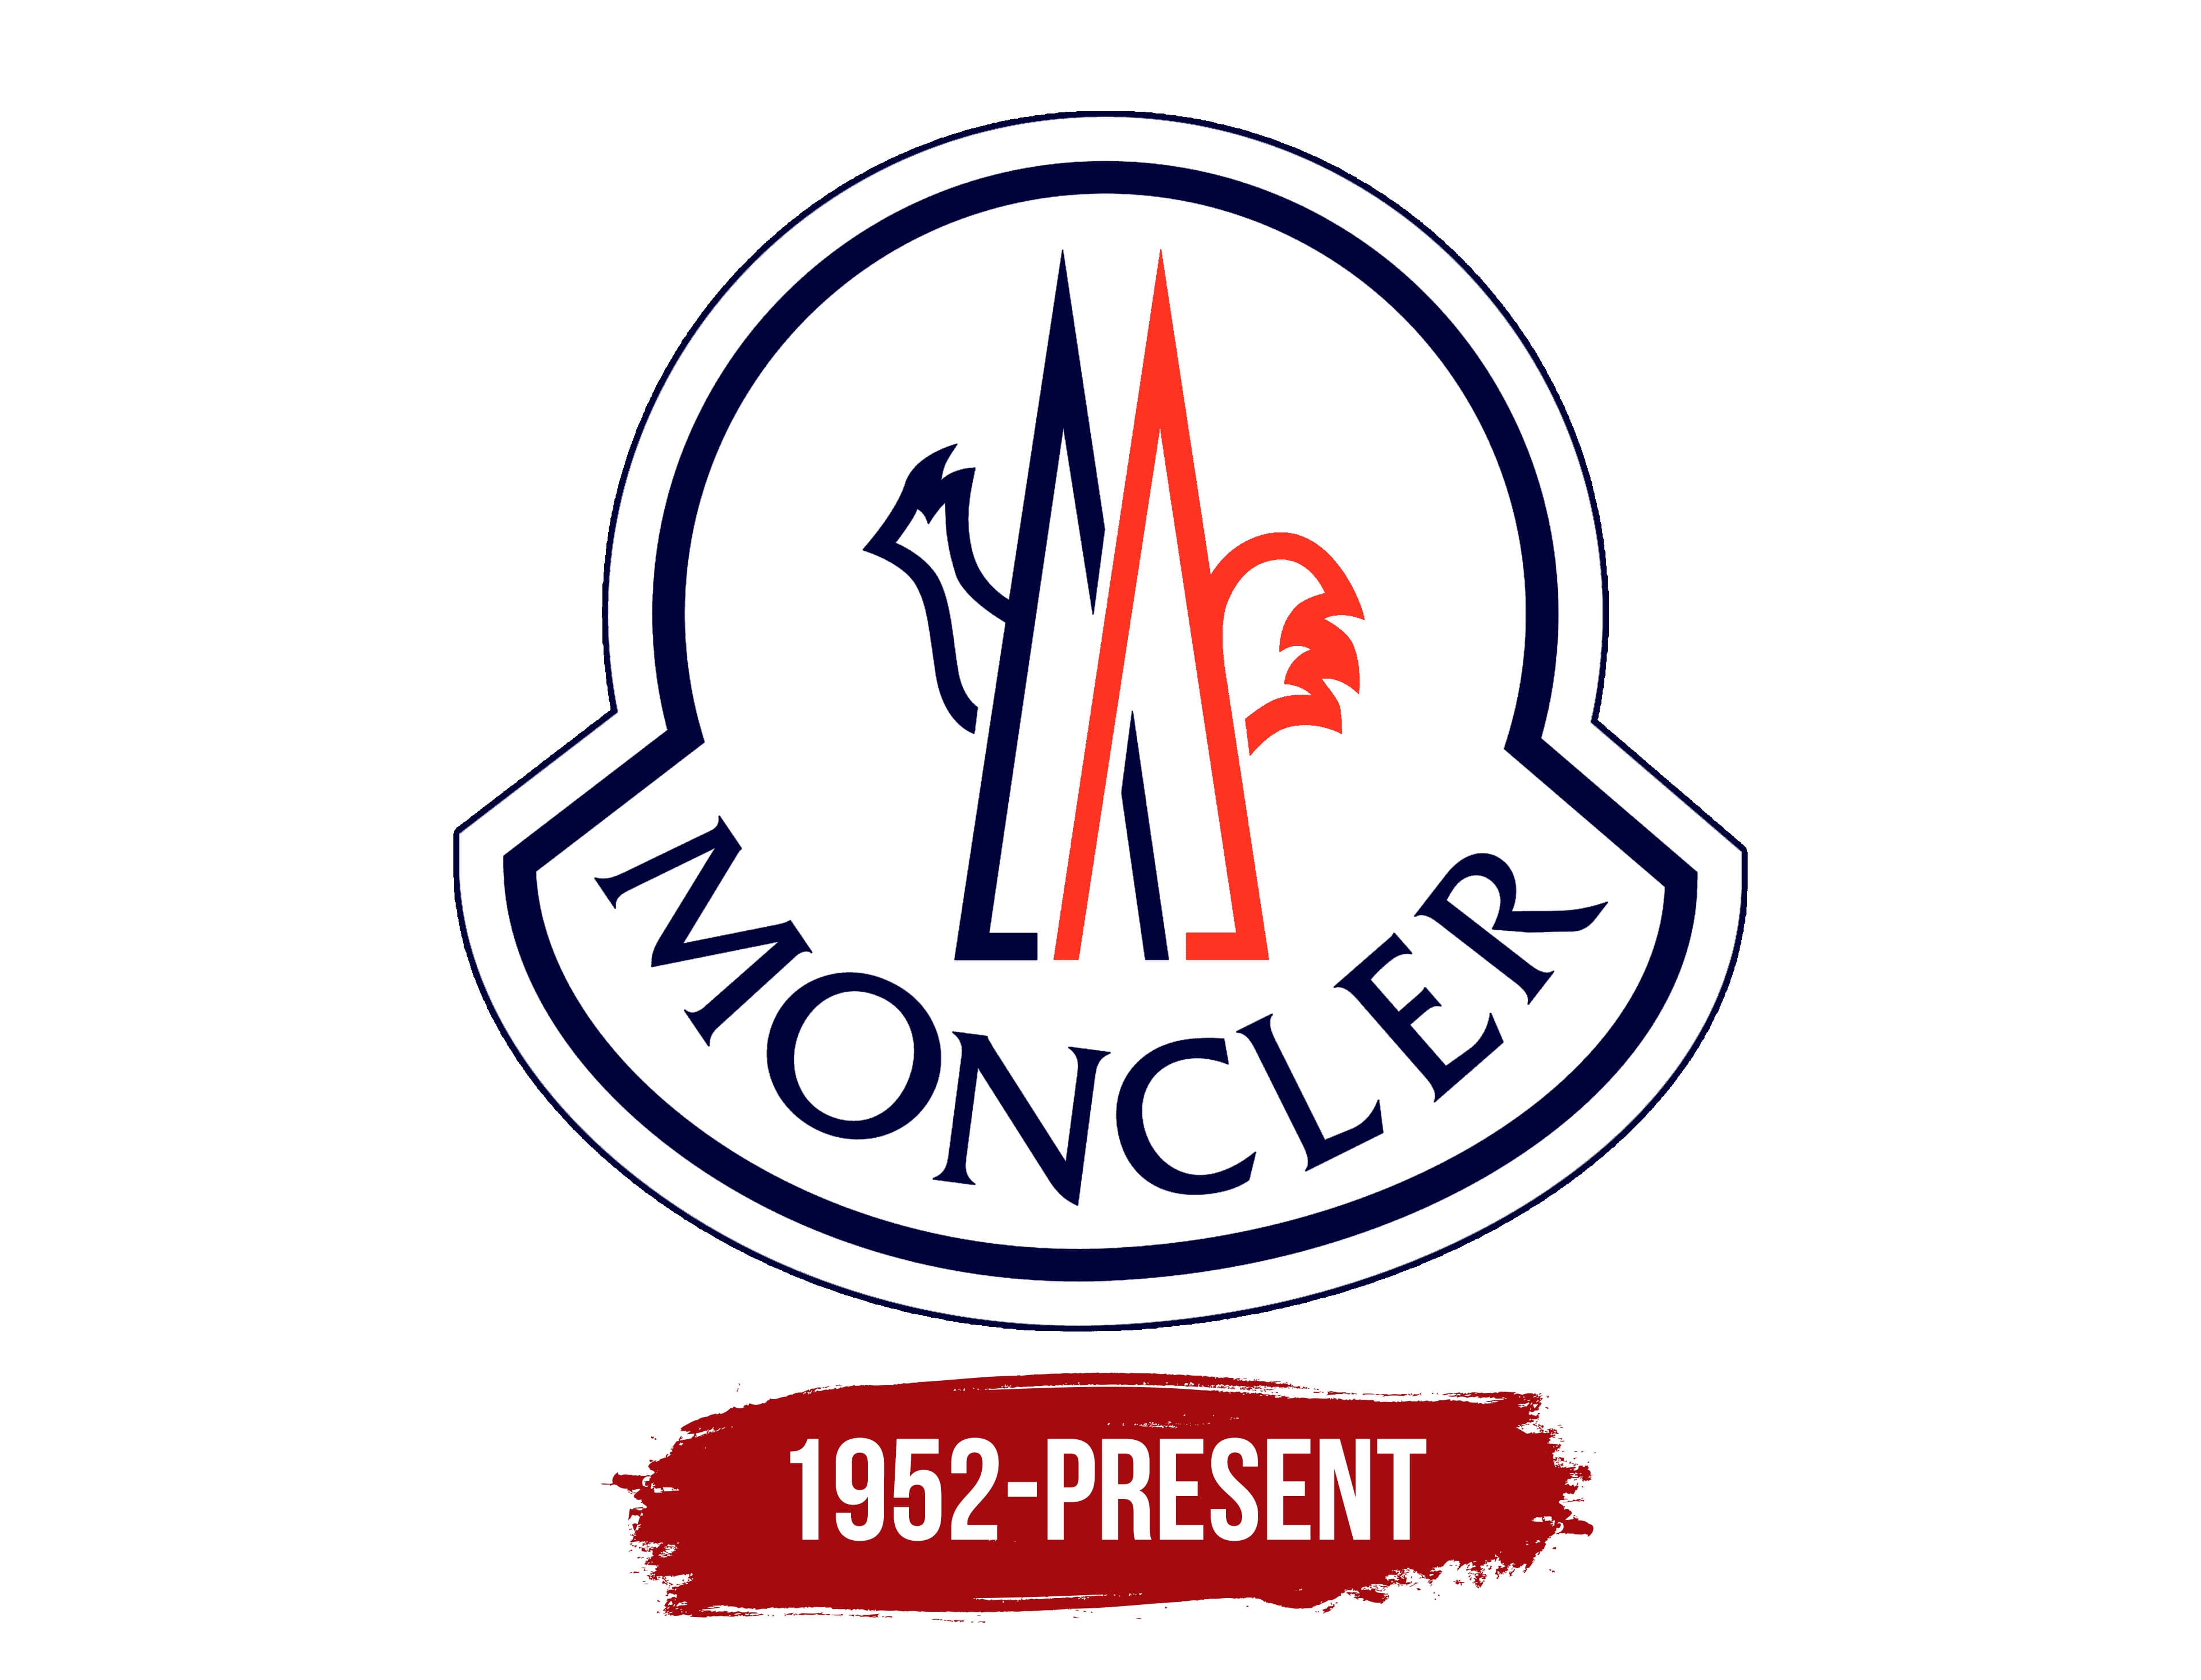 afbreken met tijd biologisch Moncler Logo, symbol, meaning, history, PNG, brand